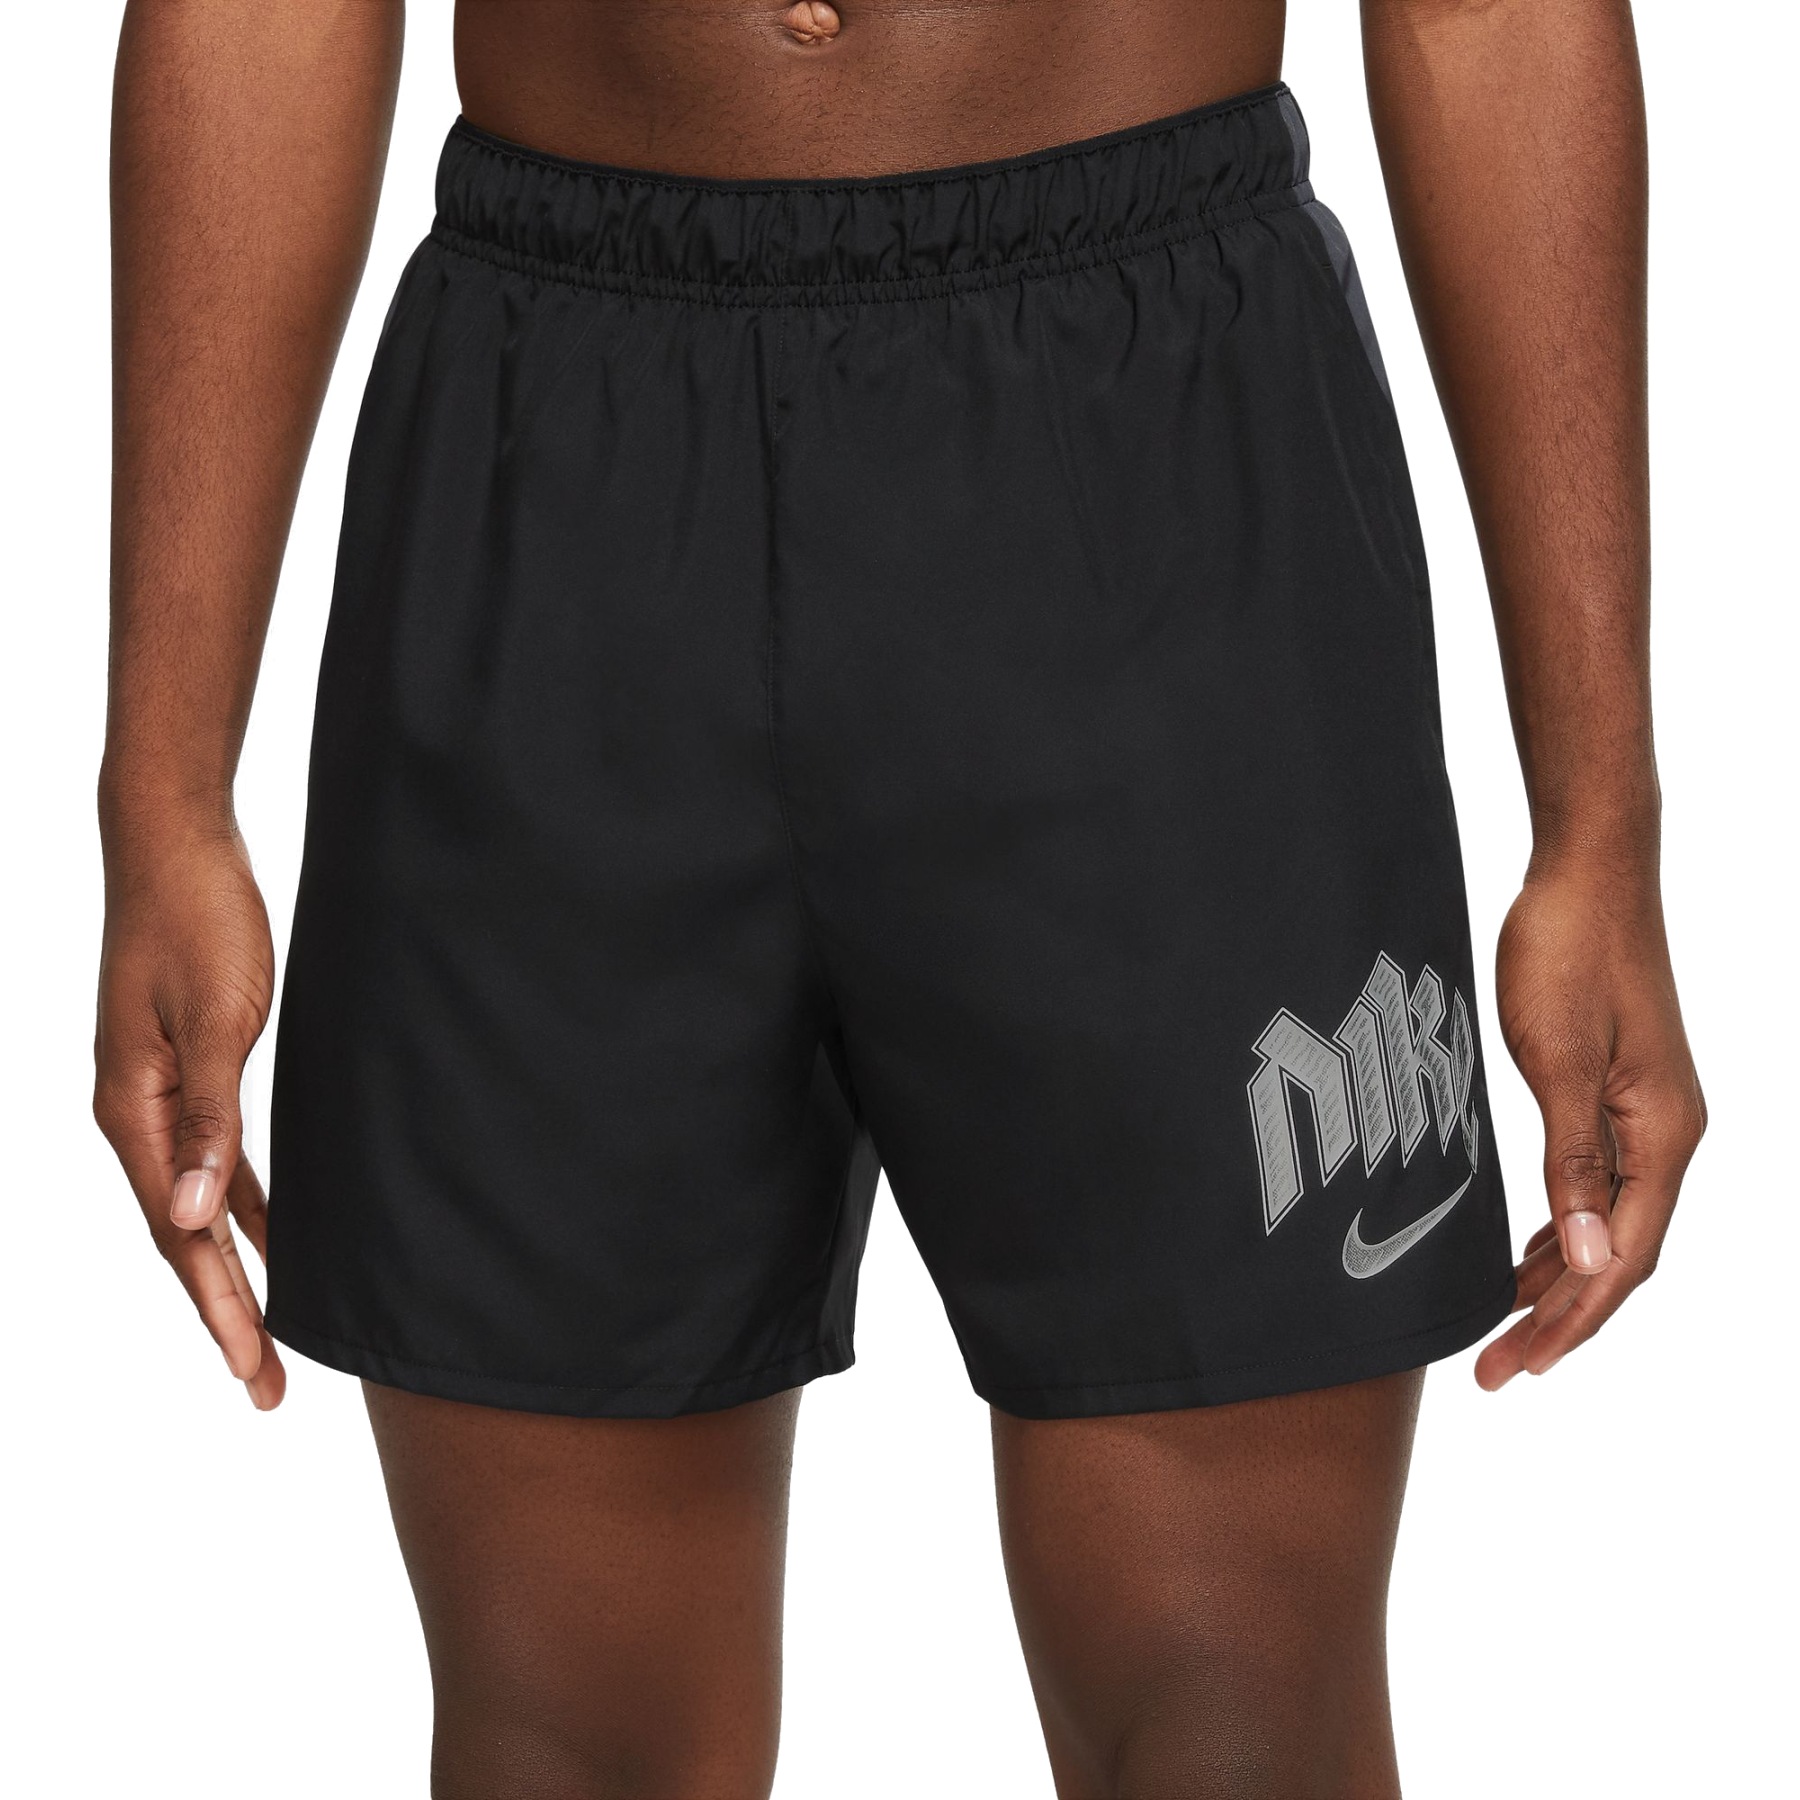 Immagine di Nike Pantaloncini da corsa 5" Uomo - Dri-FIT Division Challenger - black/anthracite/reflective silver DX0837-010